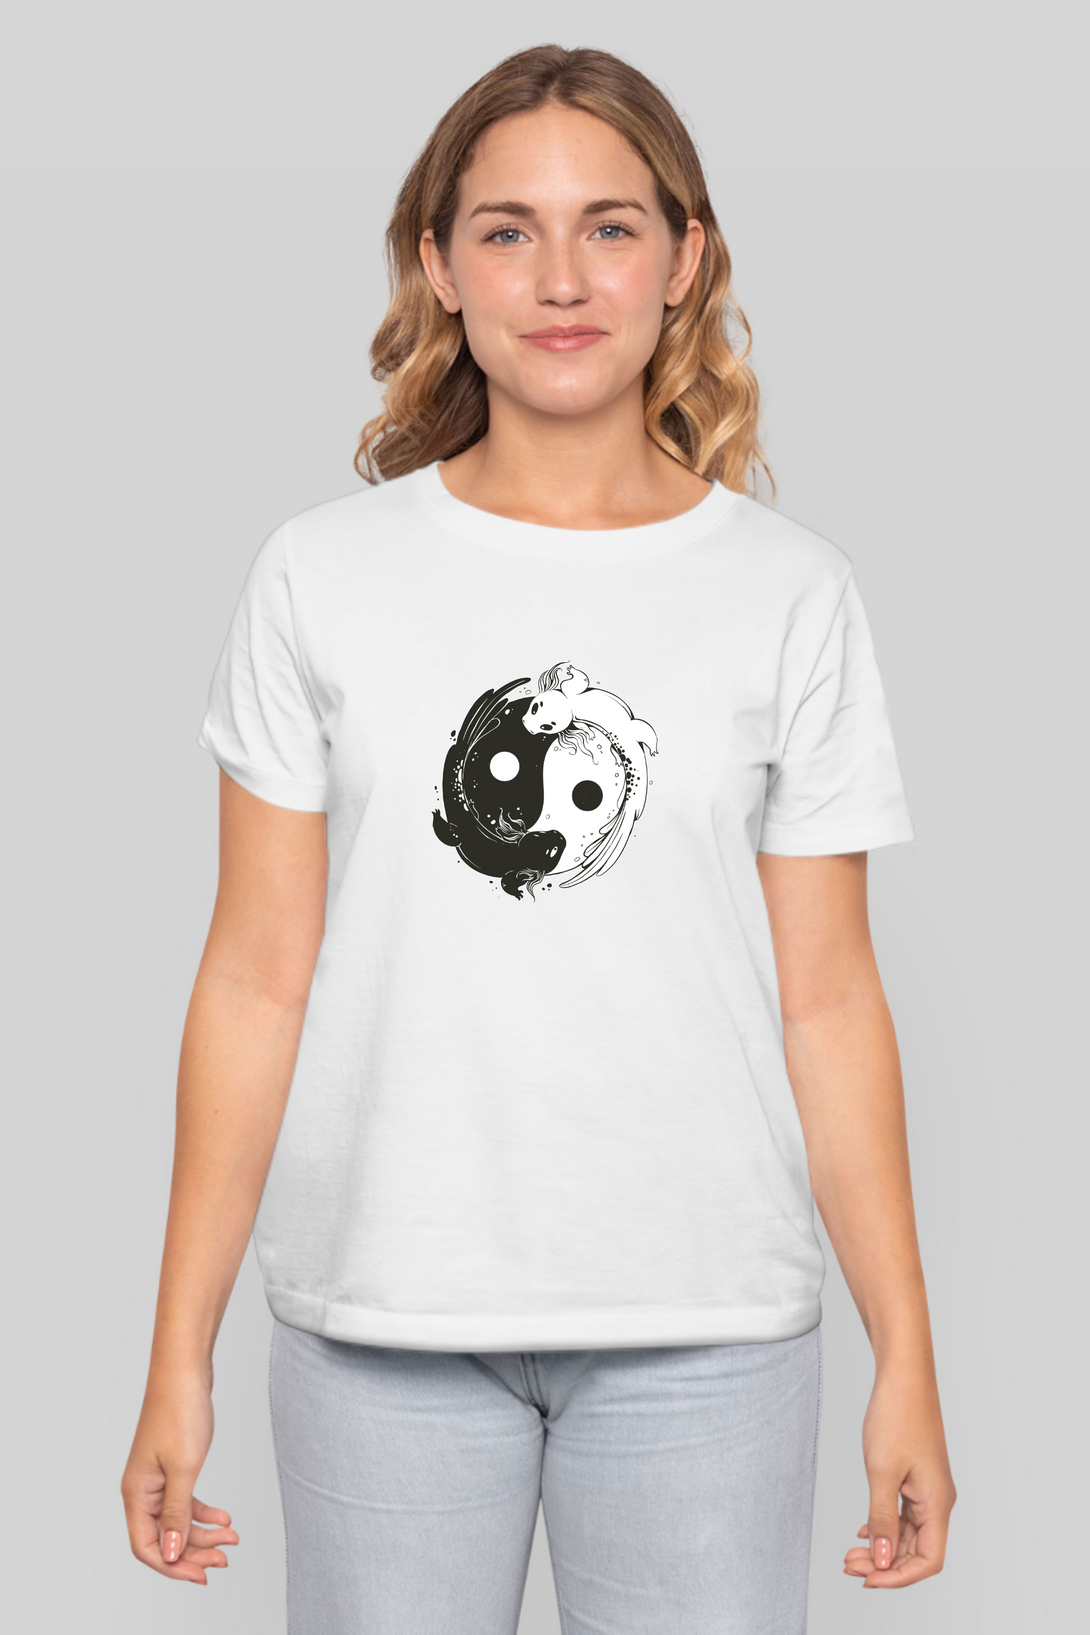 Yin Yang Axolotl Printed T-Shirt For Women - WowWaves - 7